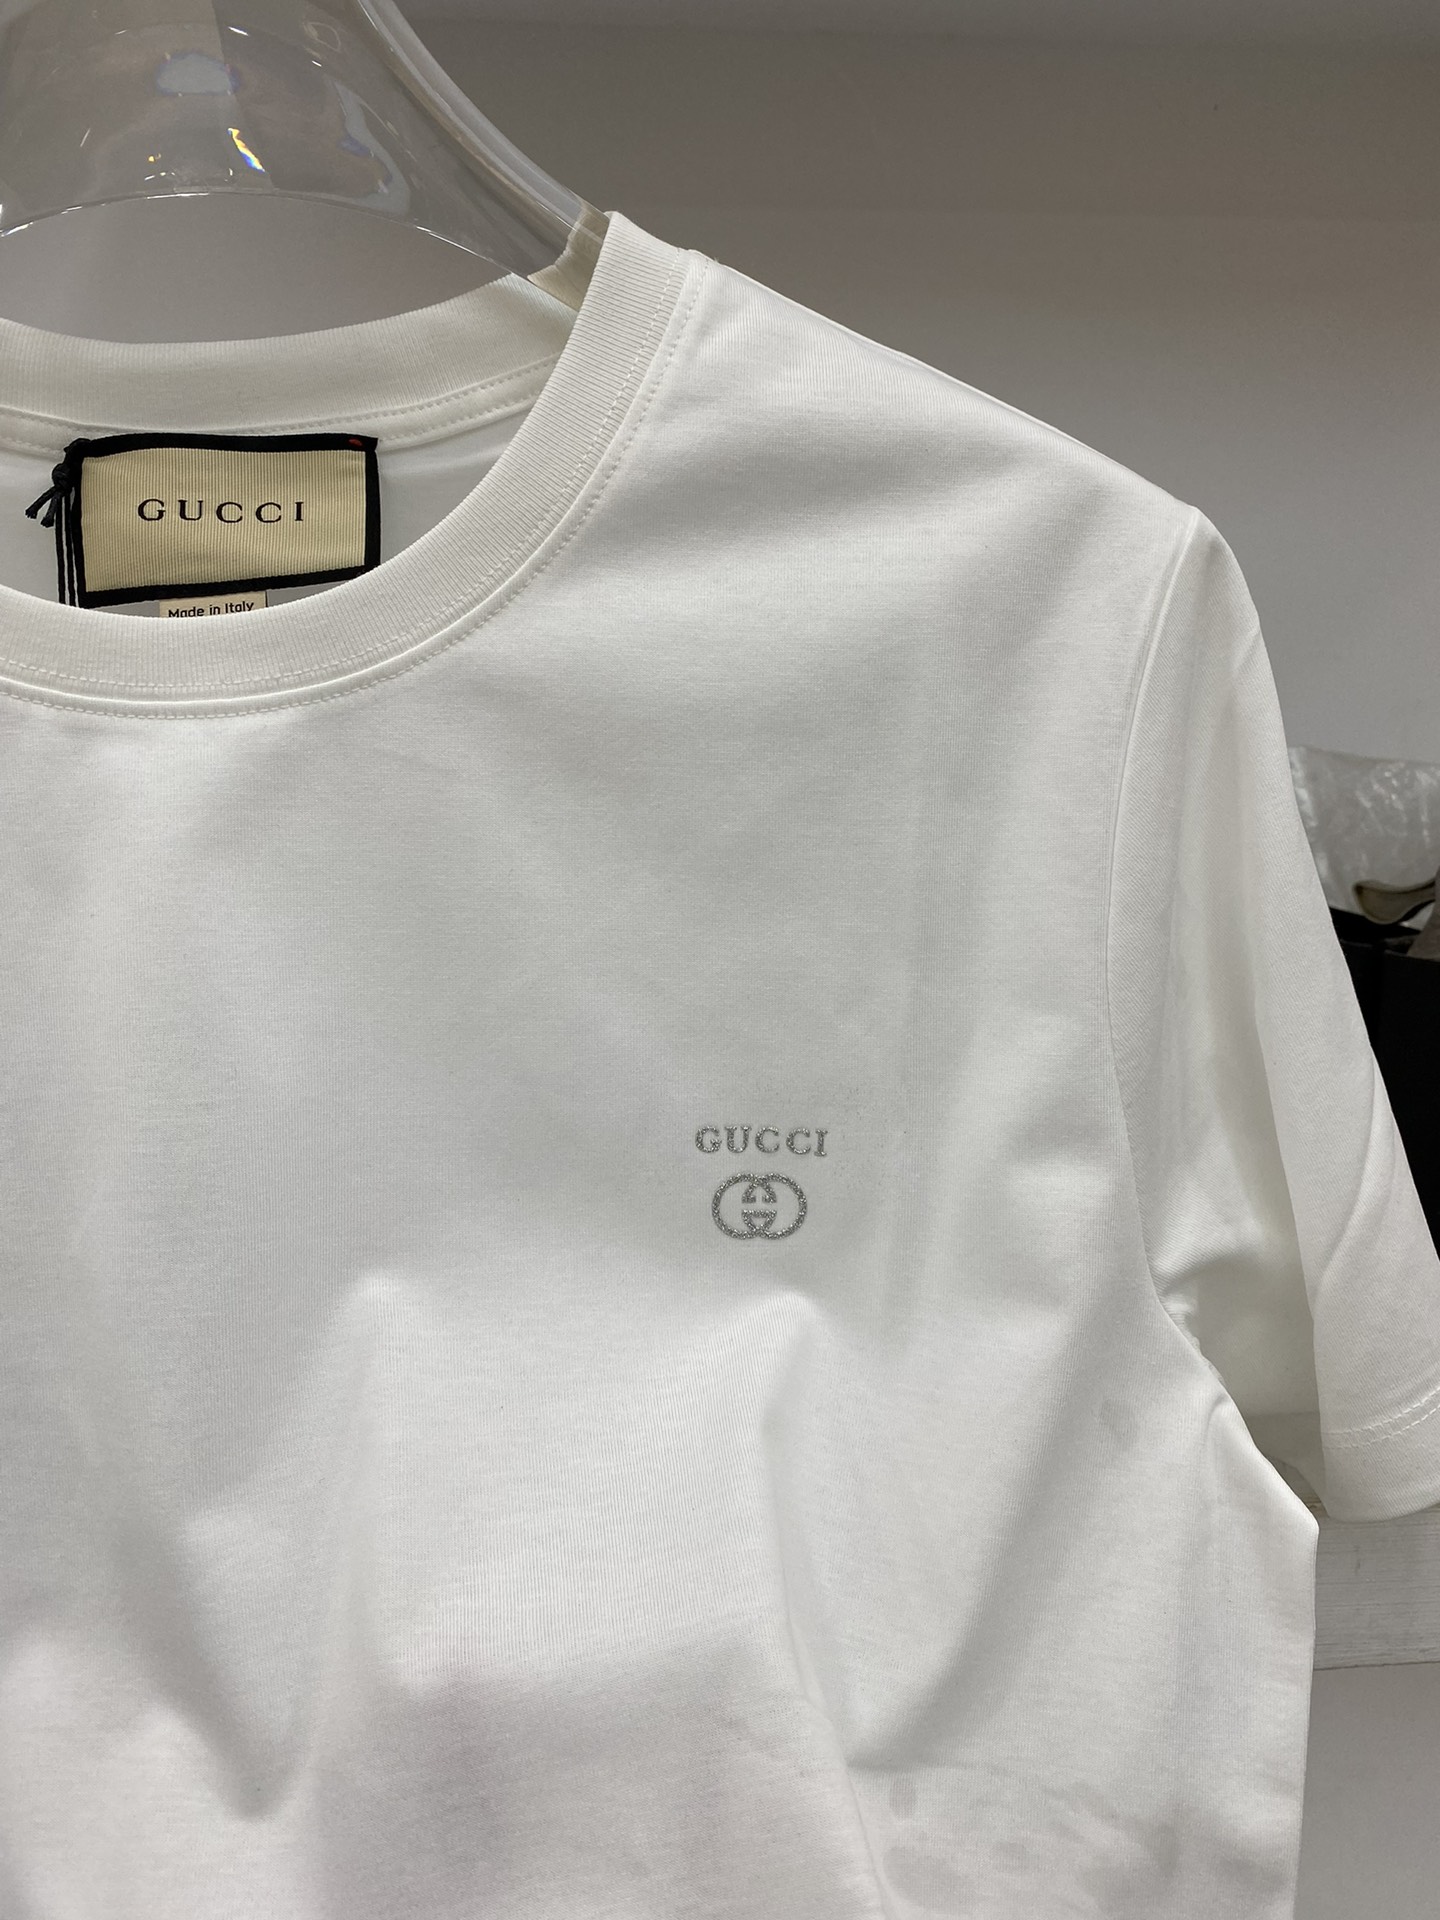 GUGCI古倚2️4️专柜原单最新款春夏新款早春男士品牌标识圆领棉质短袖T恤胸前点缀同色系品牌字母标识️